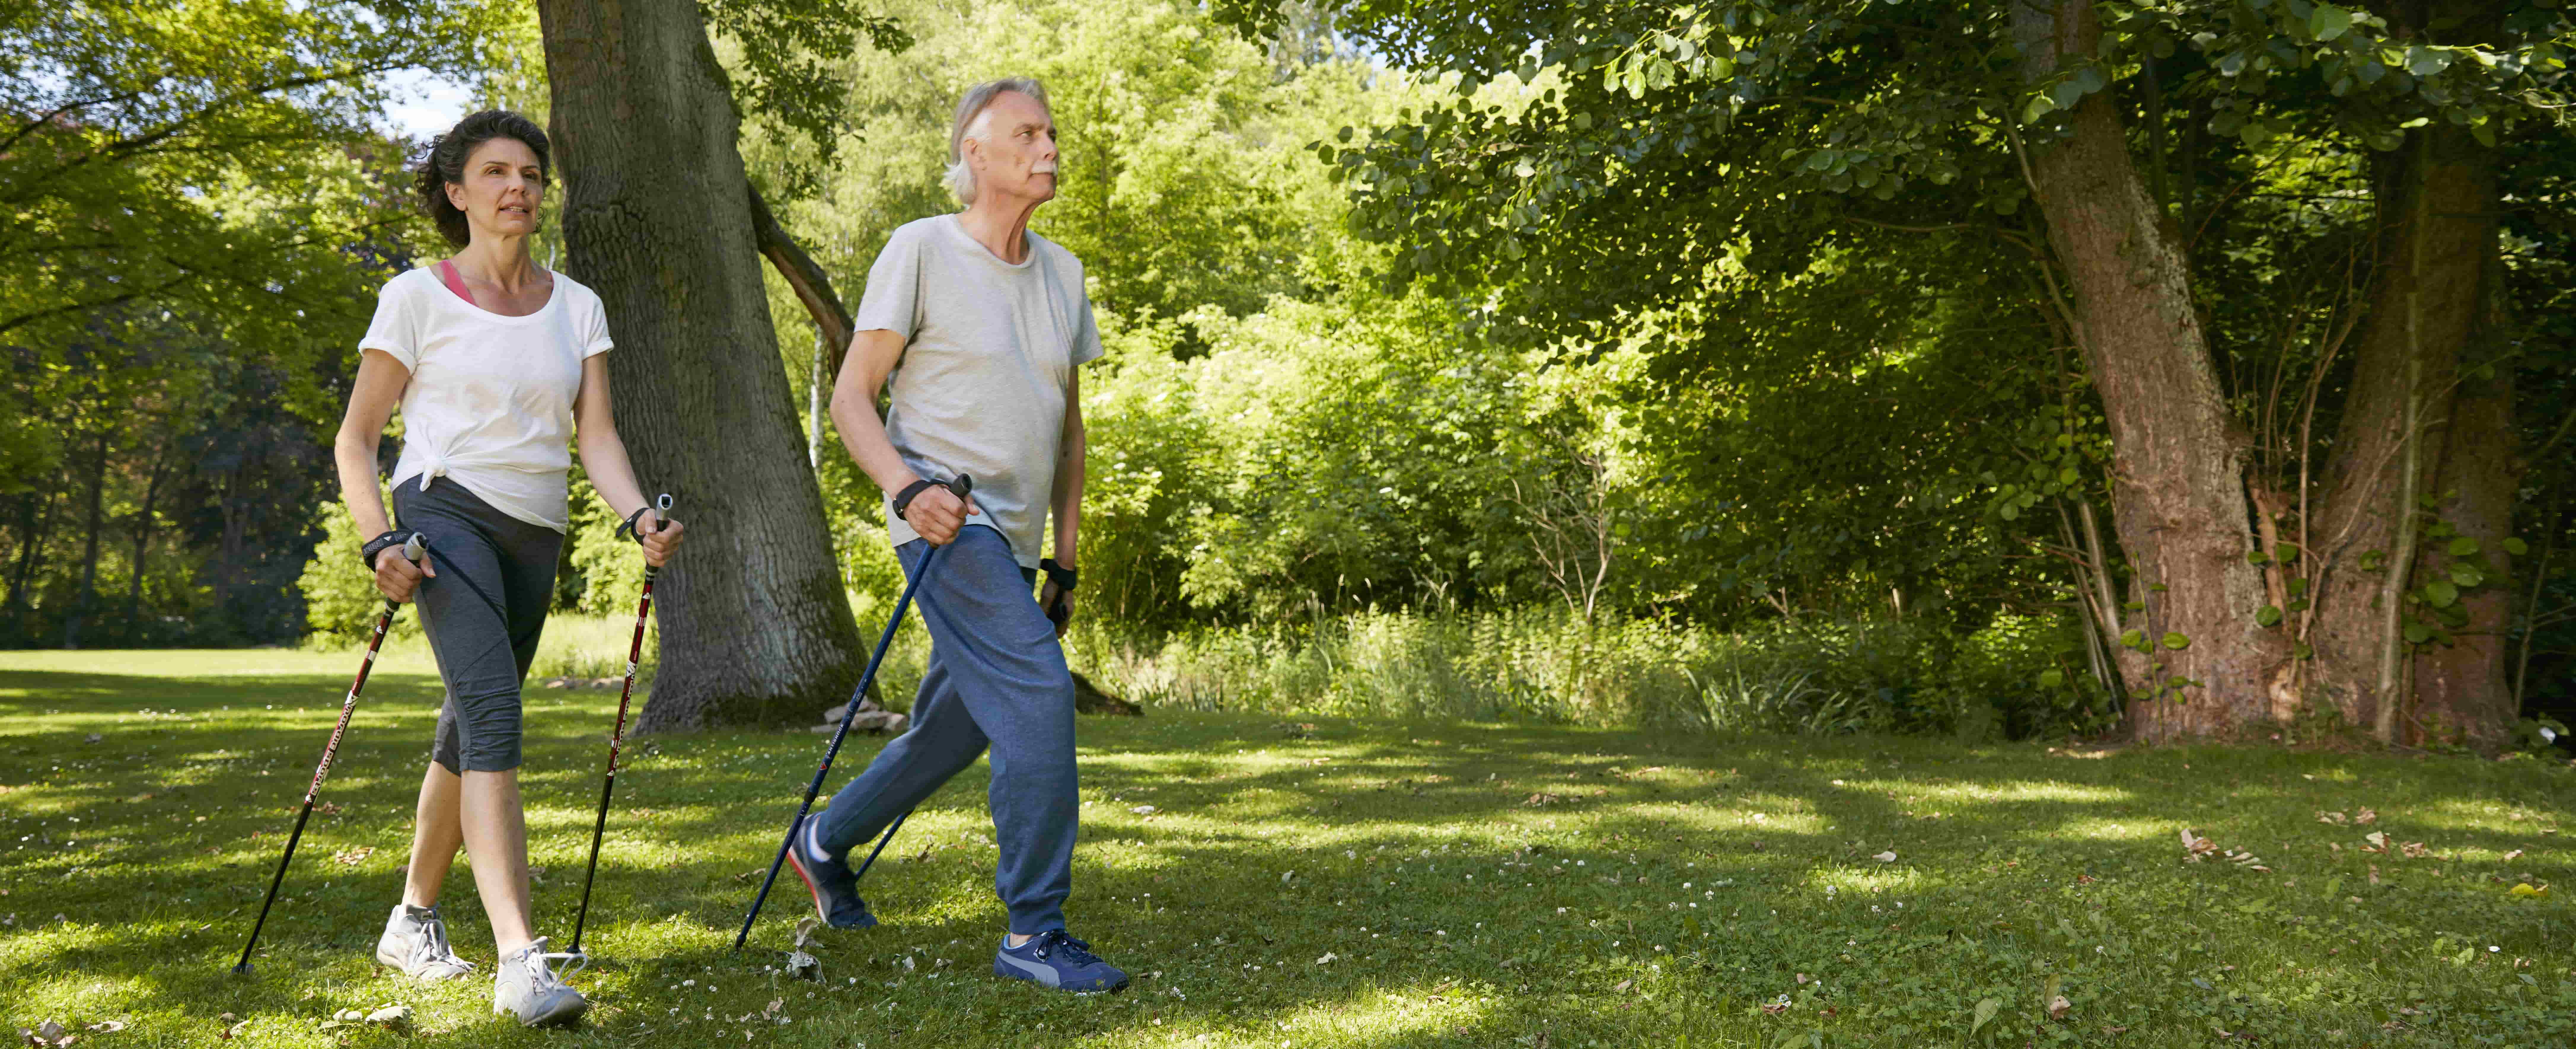 Foto de um casal de meia idade no parque durante o dia usando um par de bastões cada para ajudar na caminhada